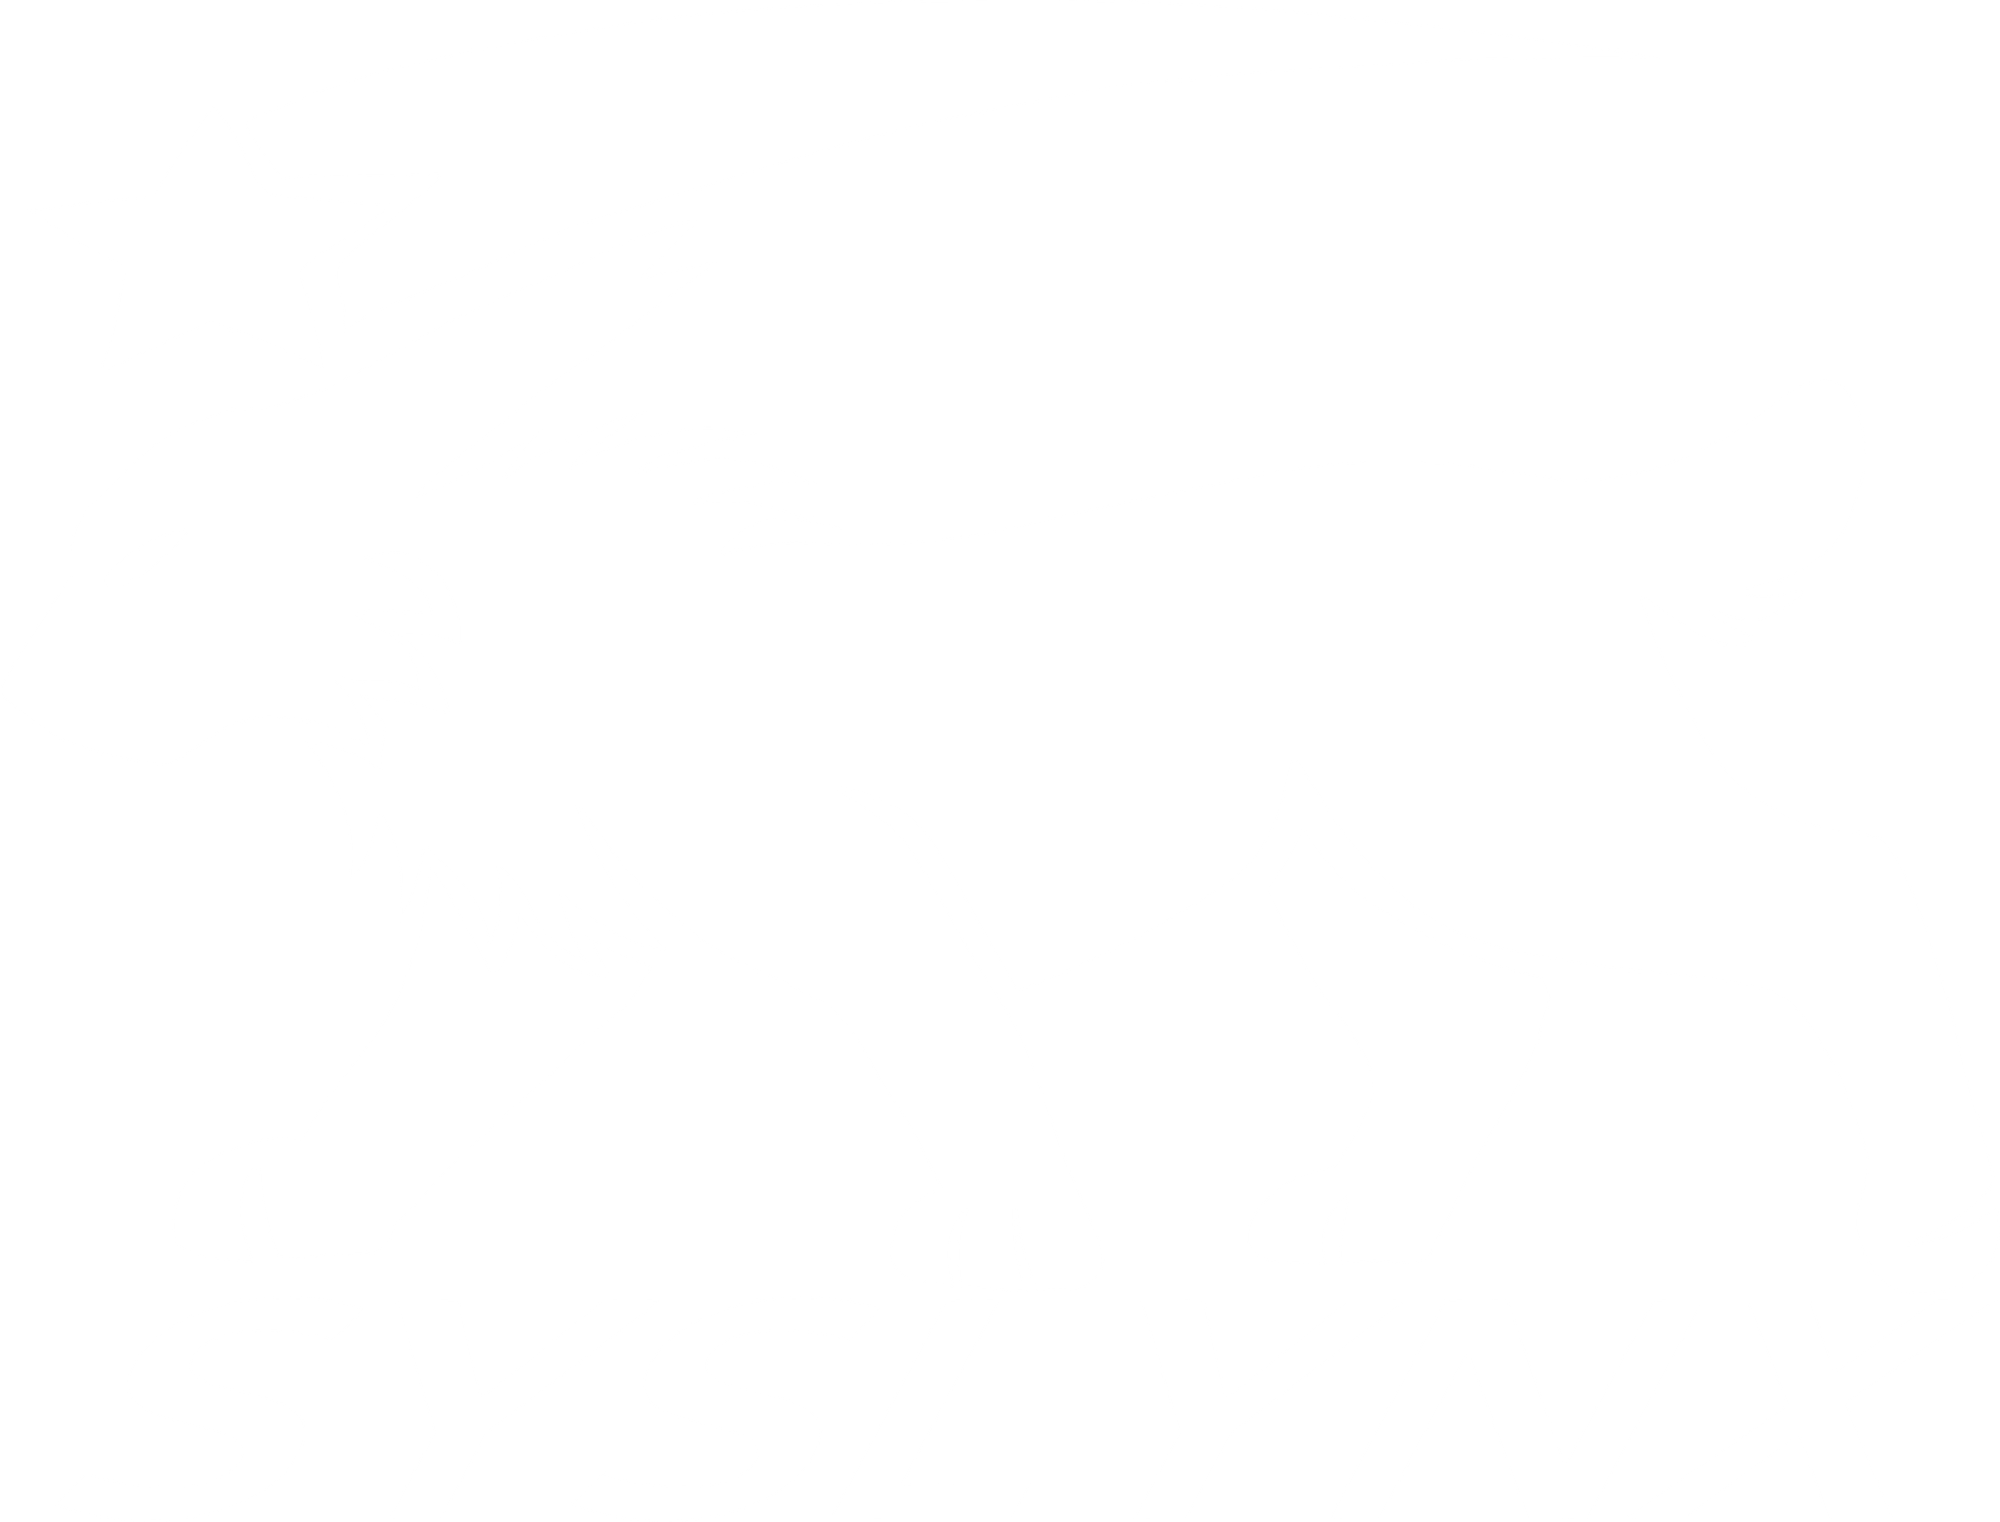 Syslynx